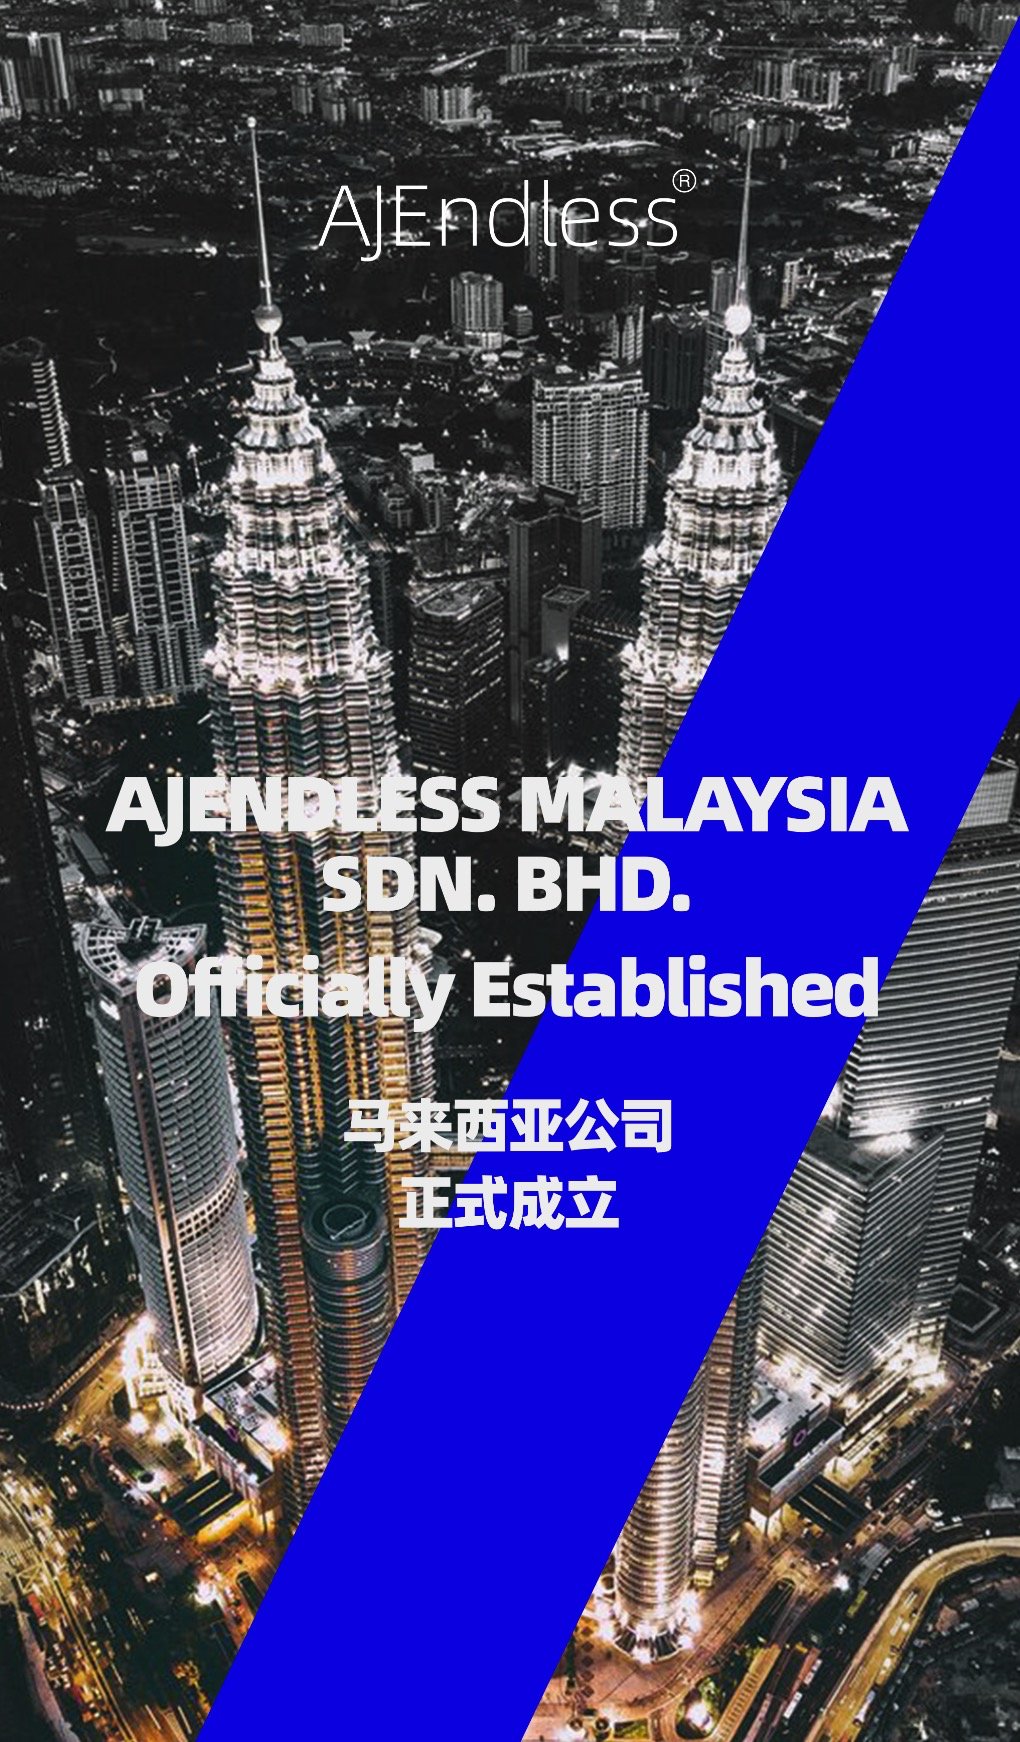 AJENDLESS 爱酱三生马来西亚分公司正式设立